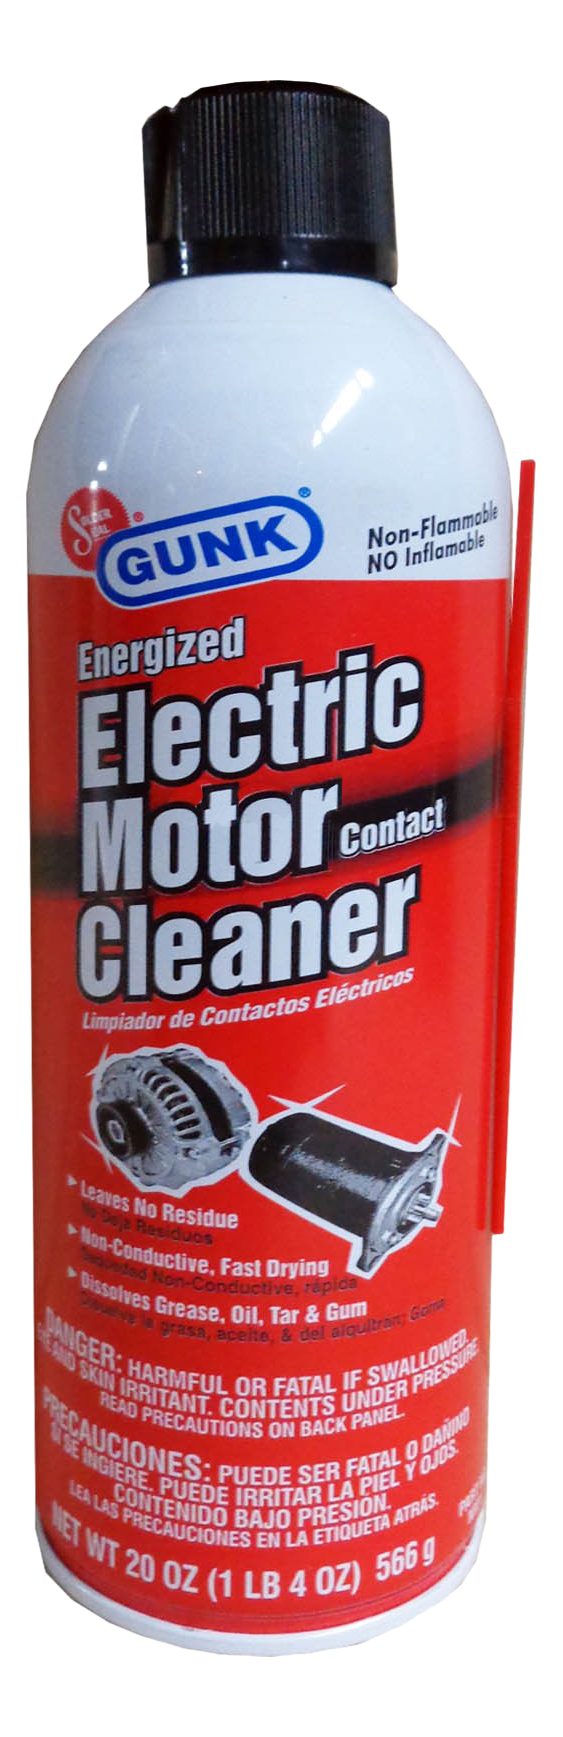 Очиститель электроконтактов Gunk NM1 Electric Motor Contact Cleaner 566 гр